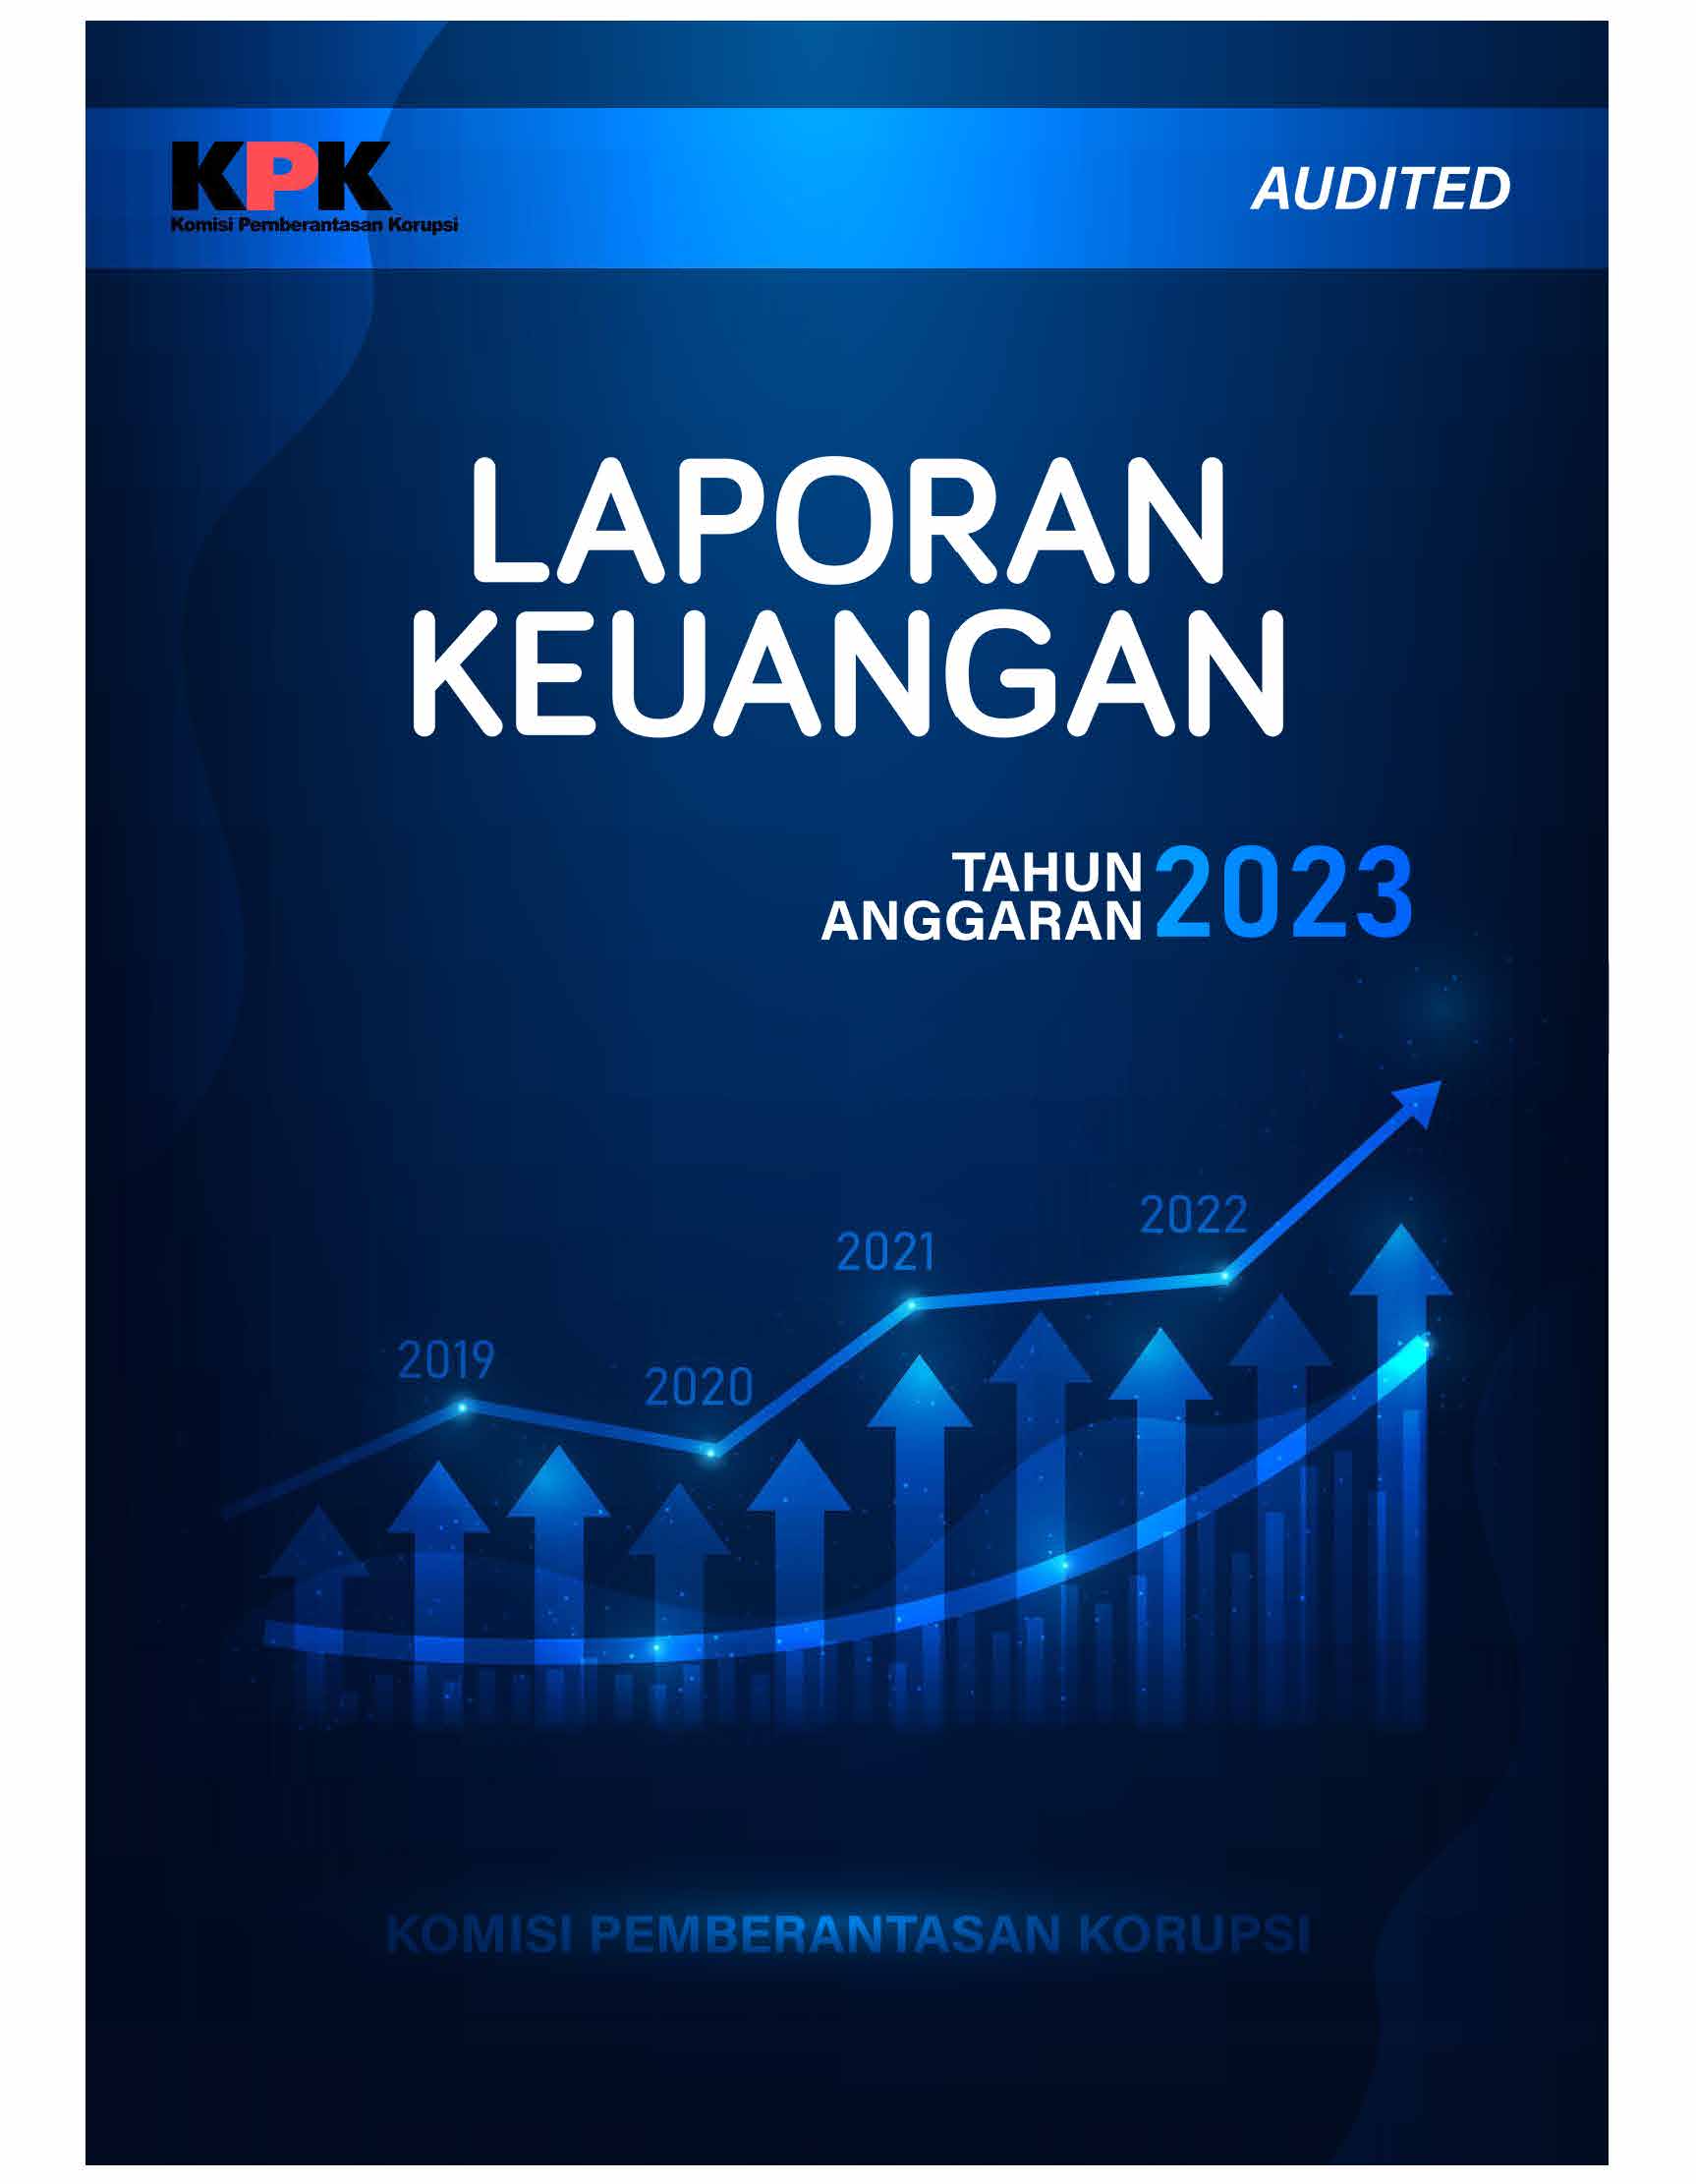 LK KPK 2020 Audited